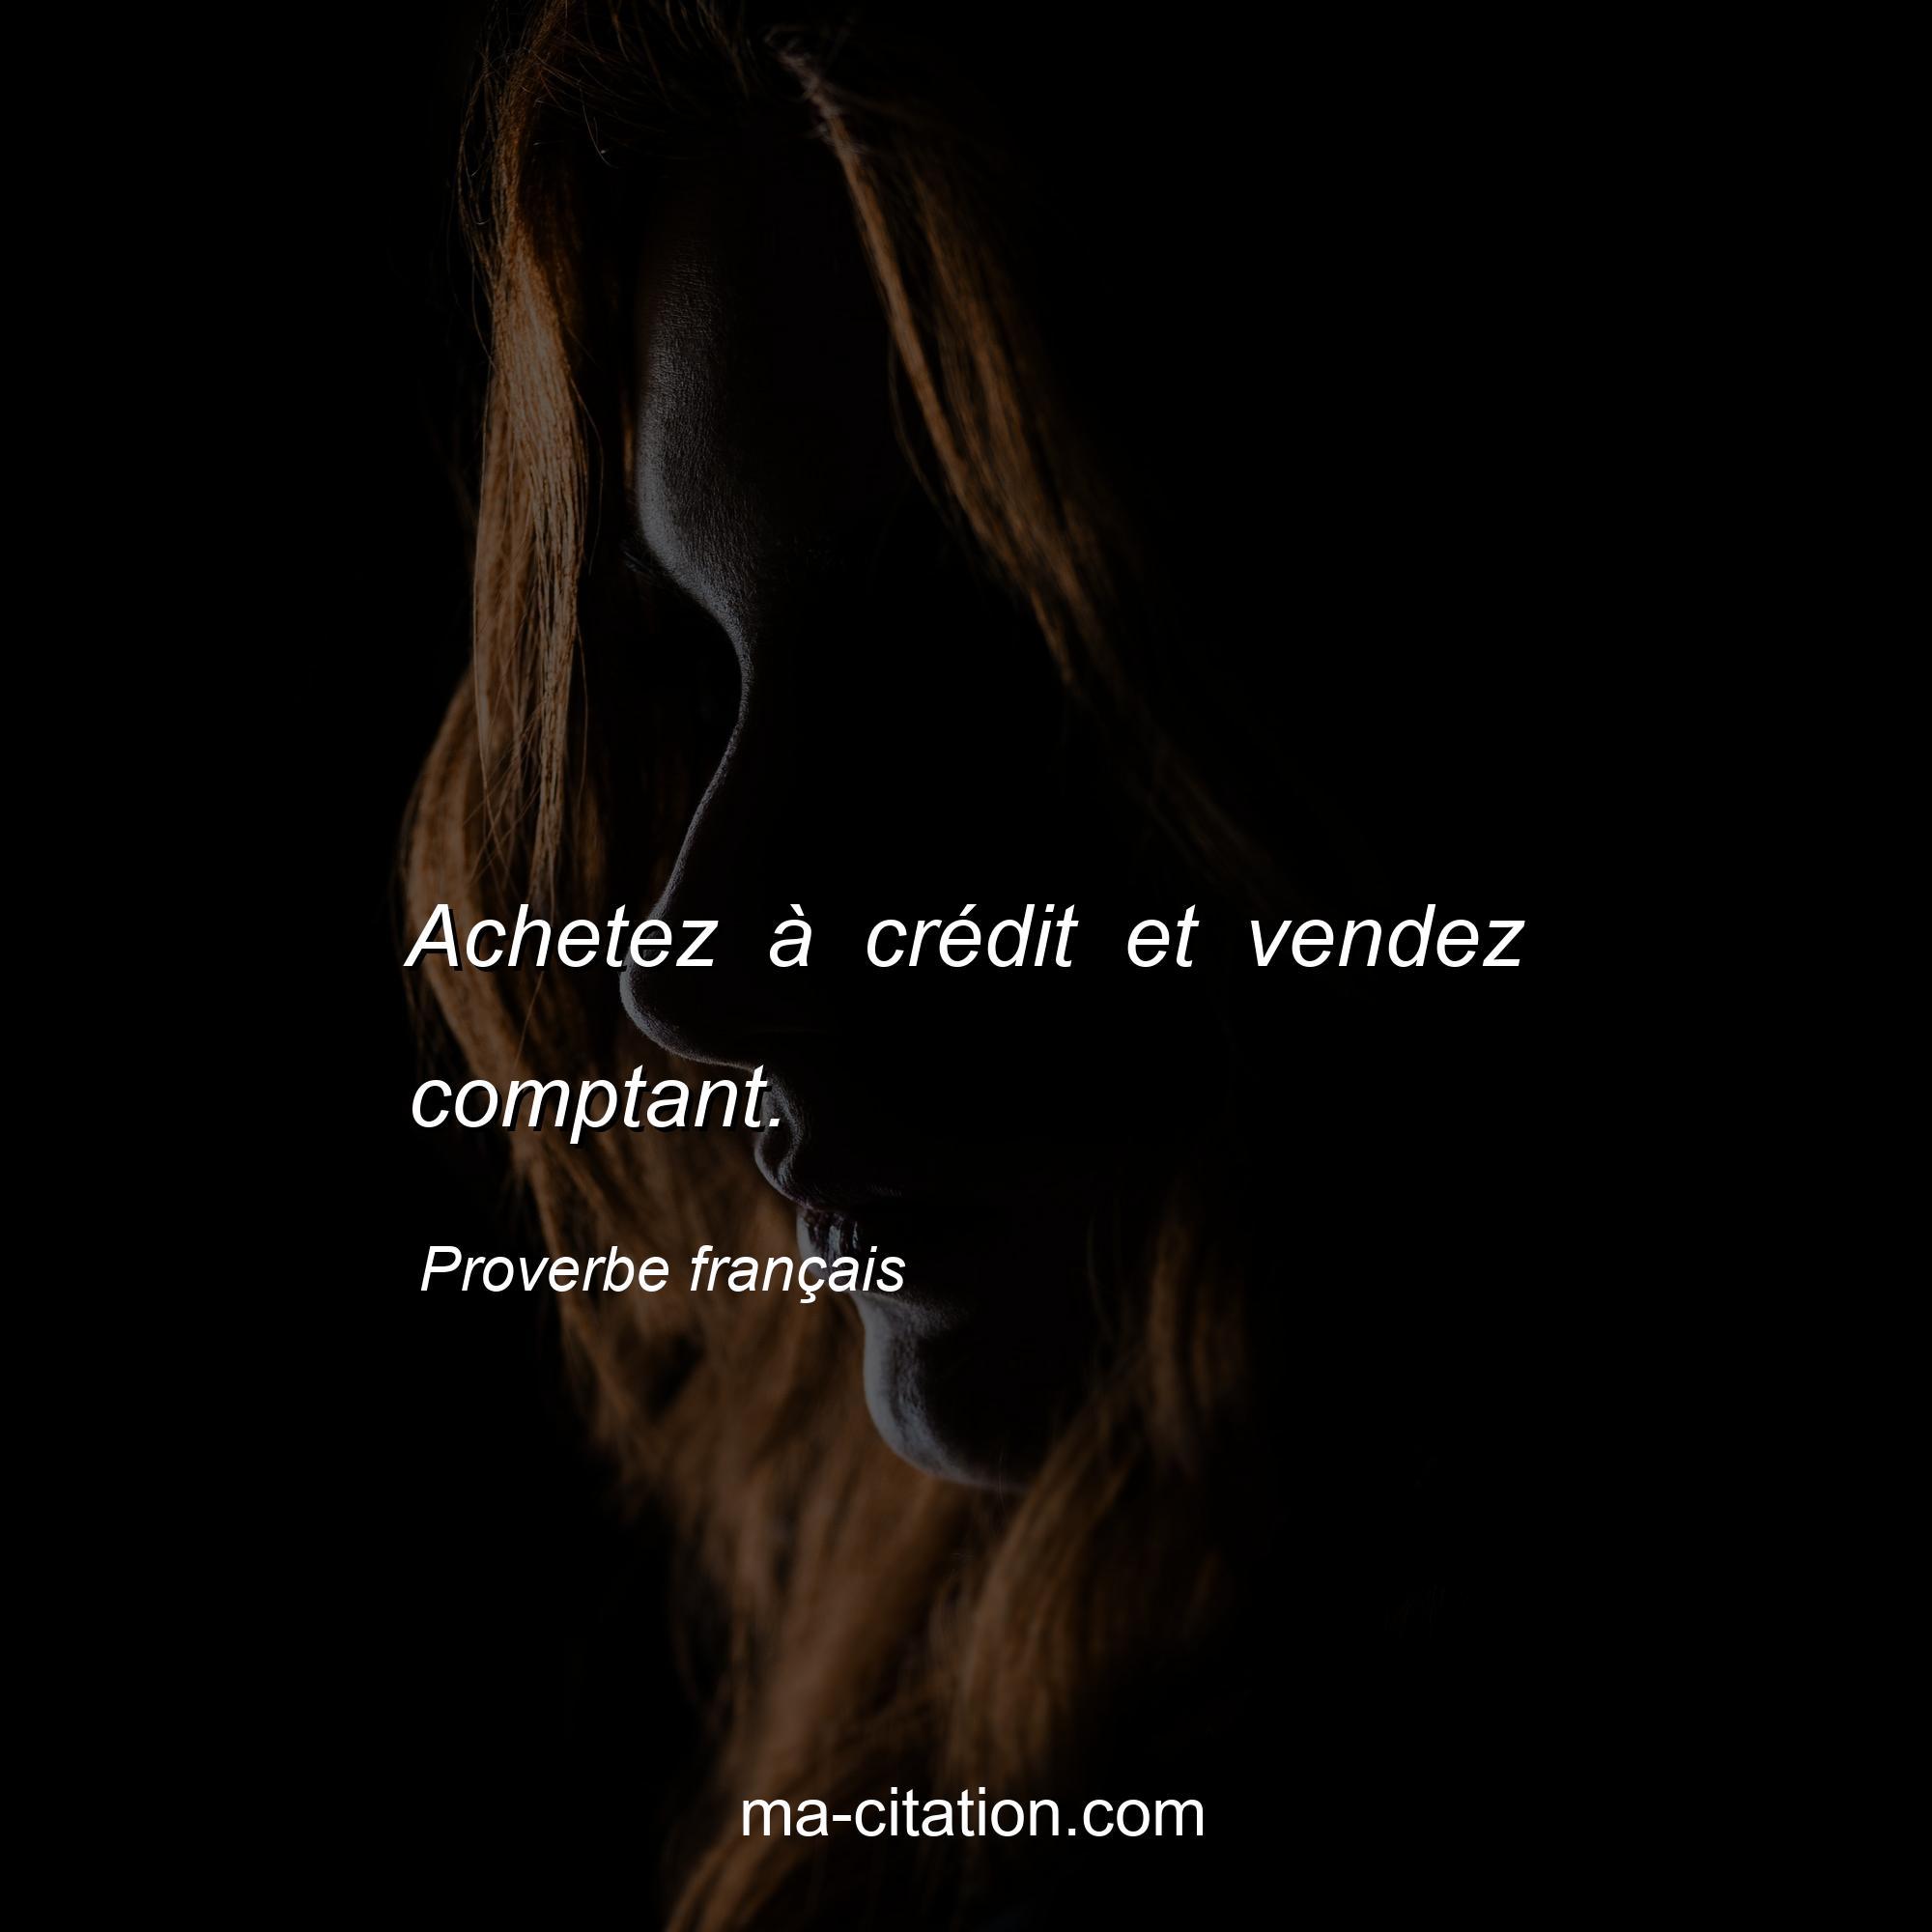 Proverbe français : Achetez à crédit et vendez comptant.